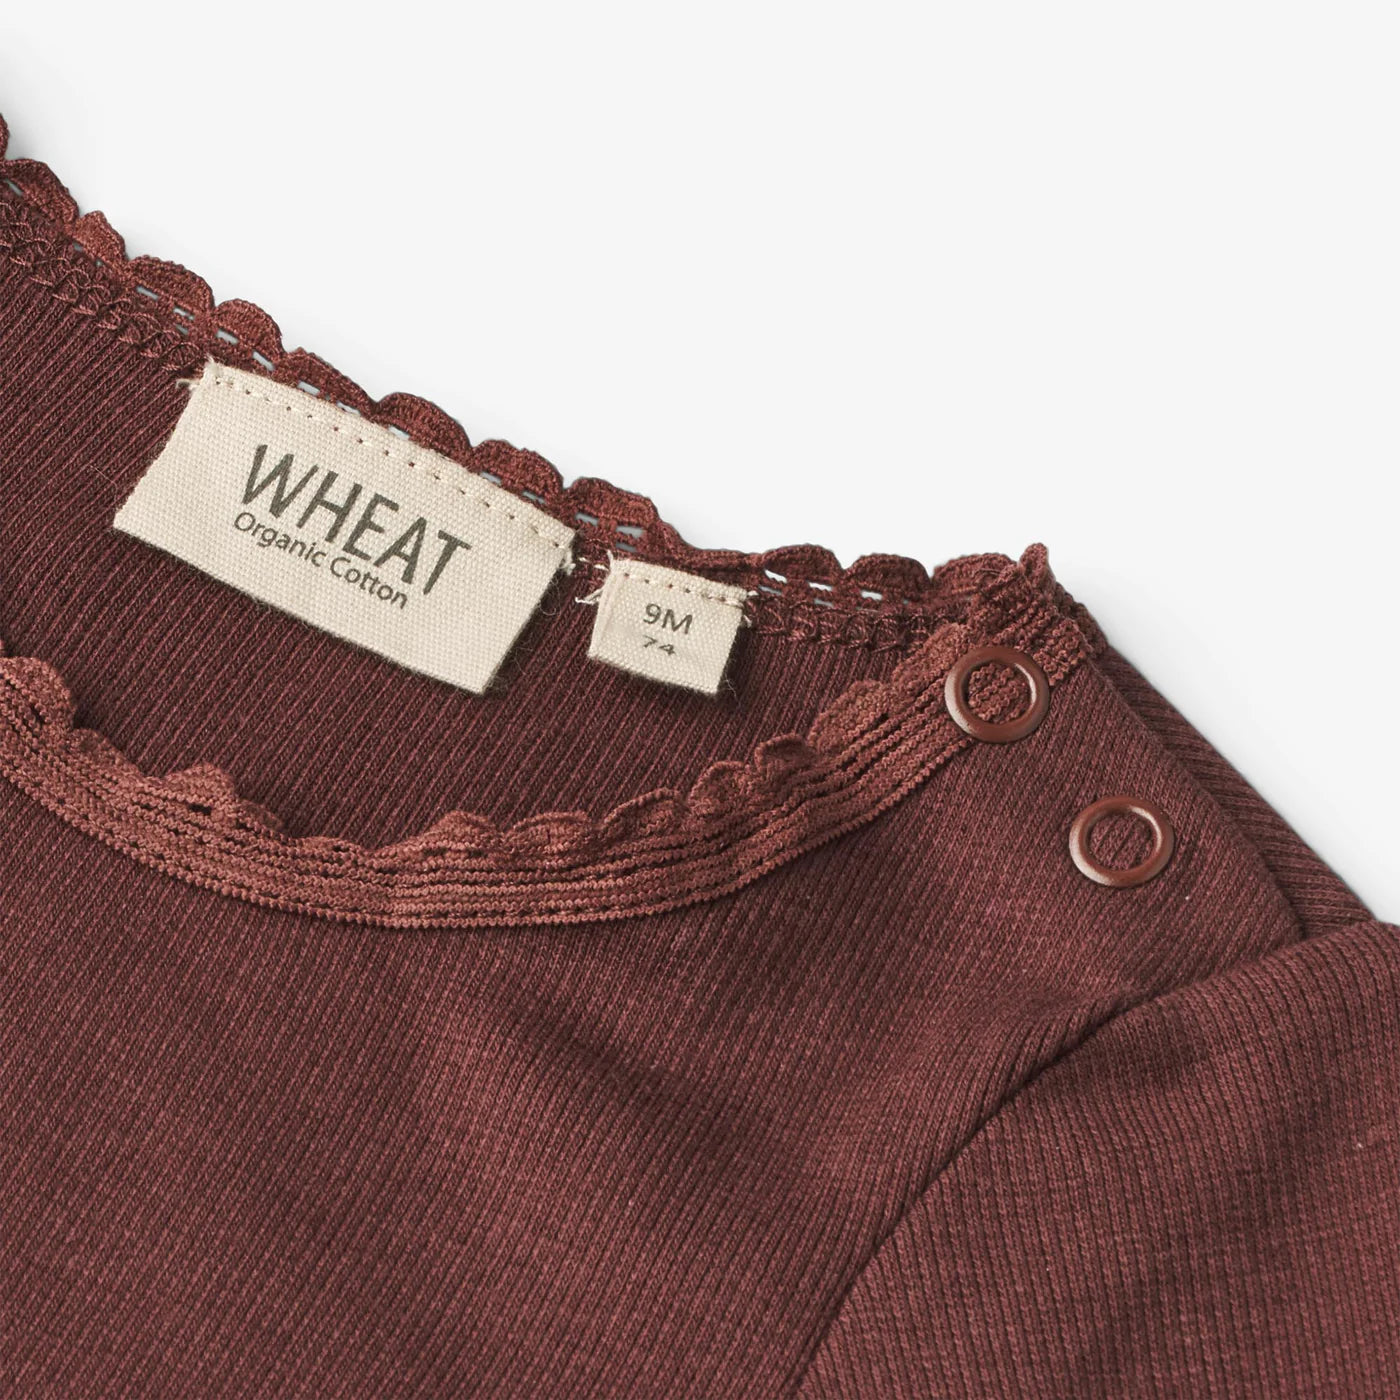 Produktbild: wheat - Langarmshirt mit Ripp-Struktur in Aubergine von wheat im Onlineshop von dasMikruli - Dein Shop für Baby Erstausstattung